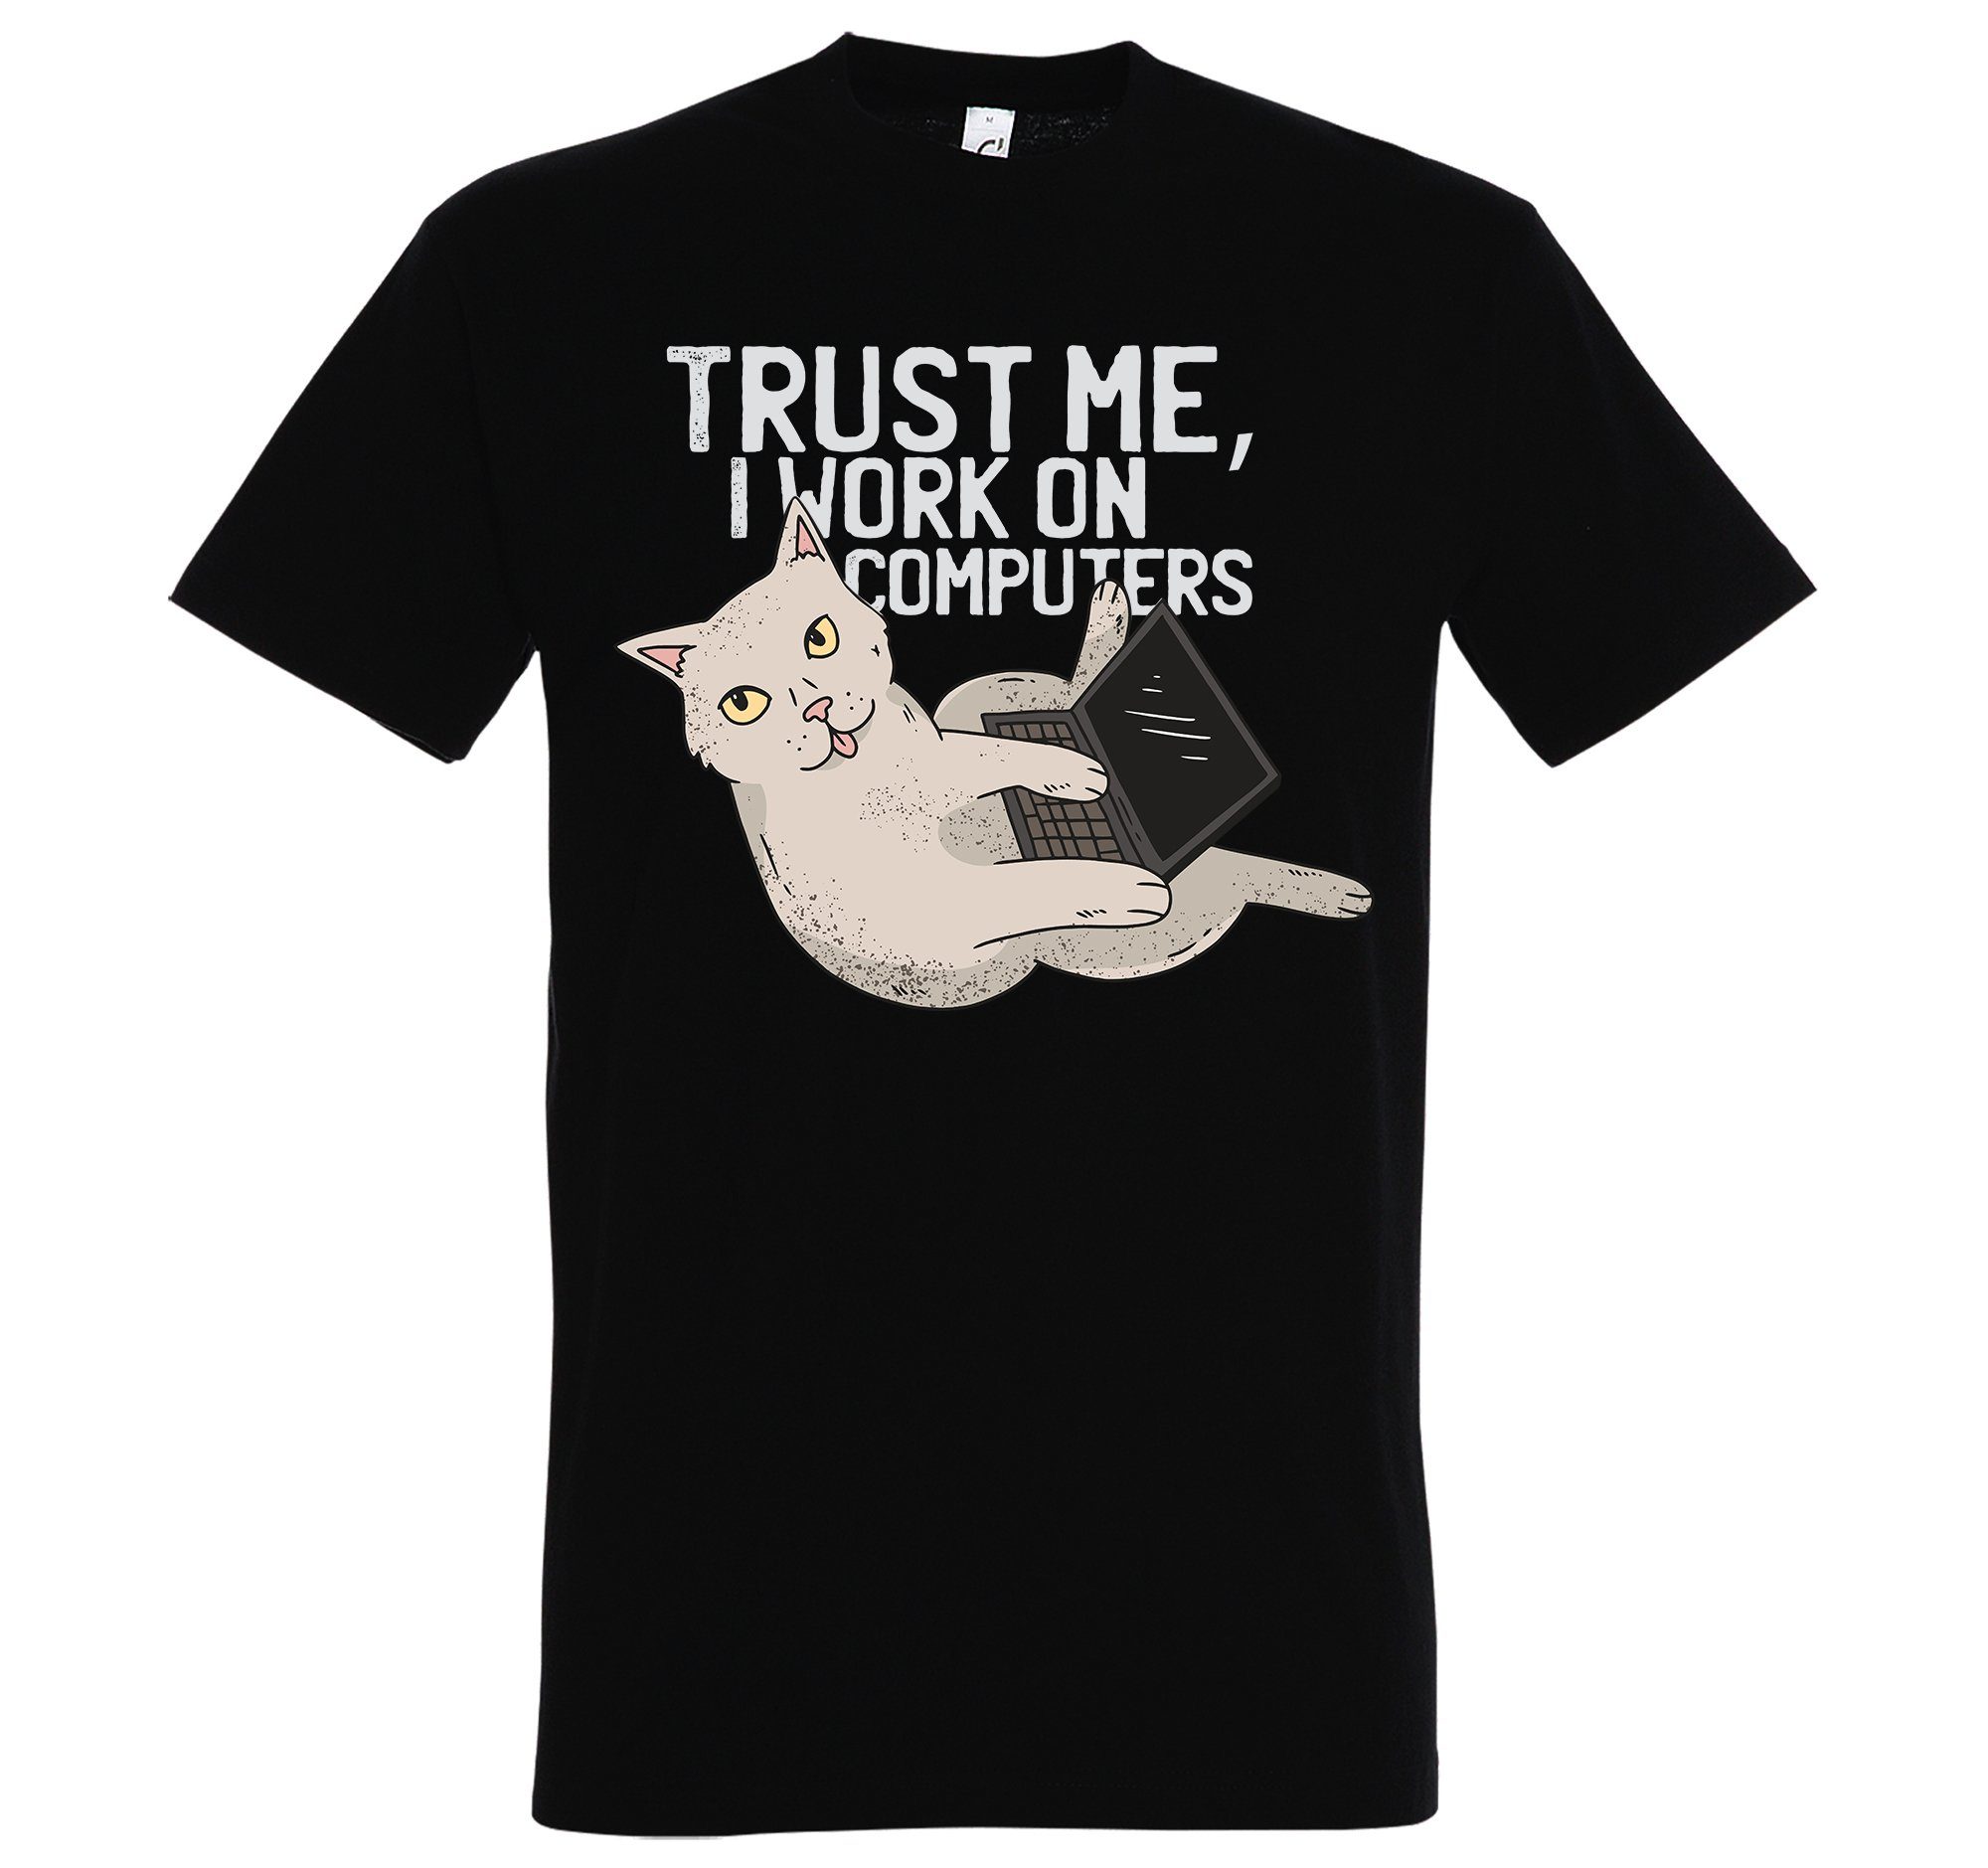 I Herren T-Shirt Youth "Trust On trendigem Designz Computers" Me, mit Schwarz Shirt Frontprint Work